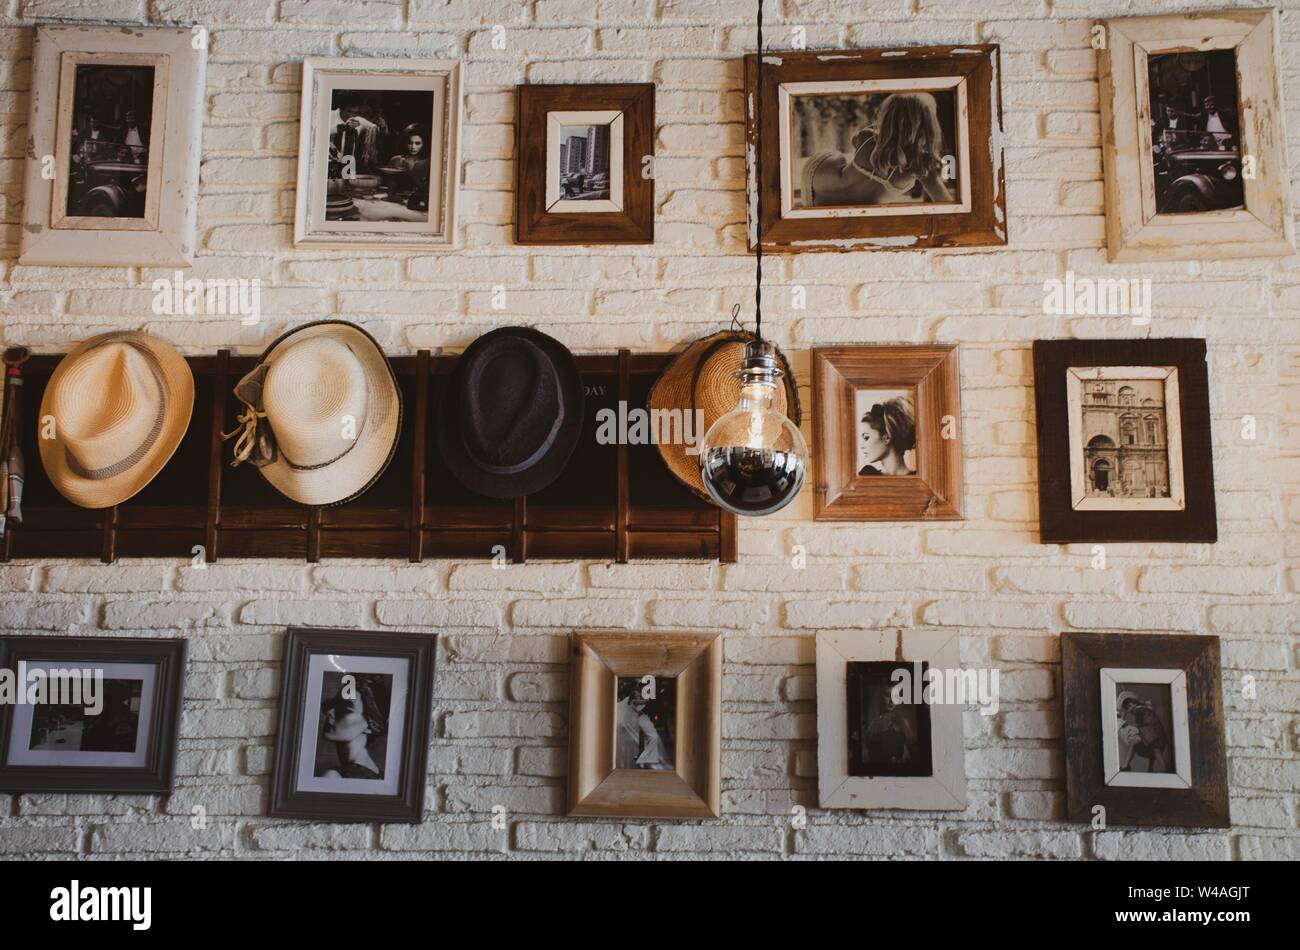 Bilderrahmen an der Wand hängen mit Hüten in einem Raster Formation, Vintage Style Stockfoto